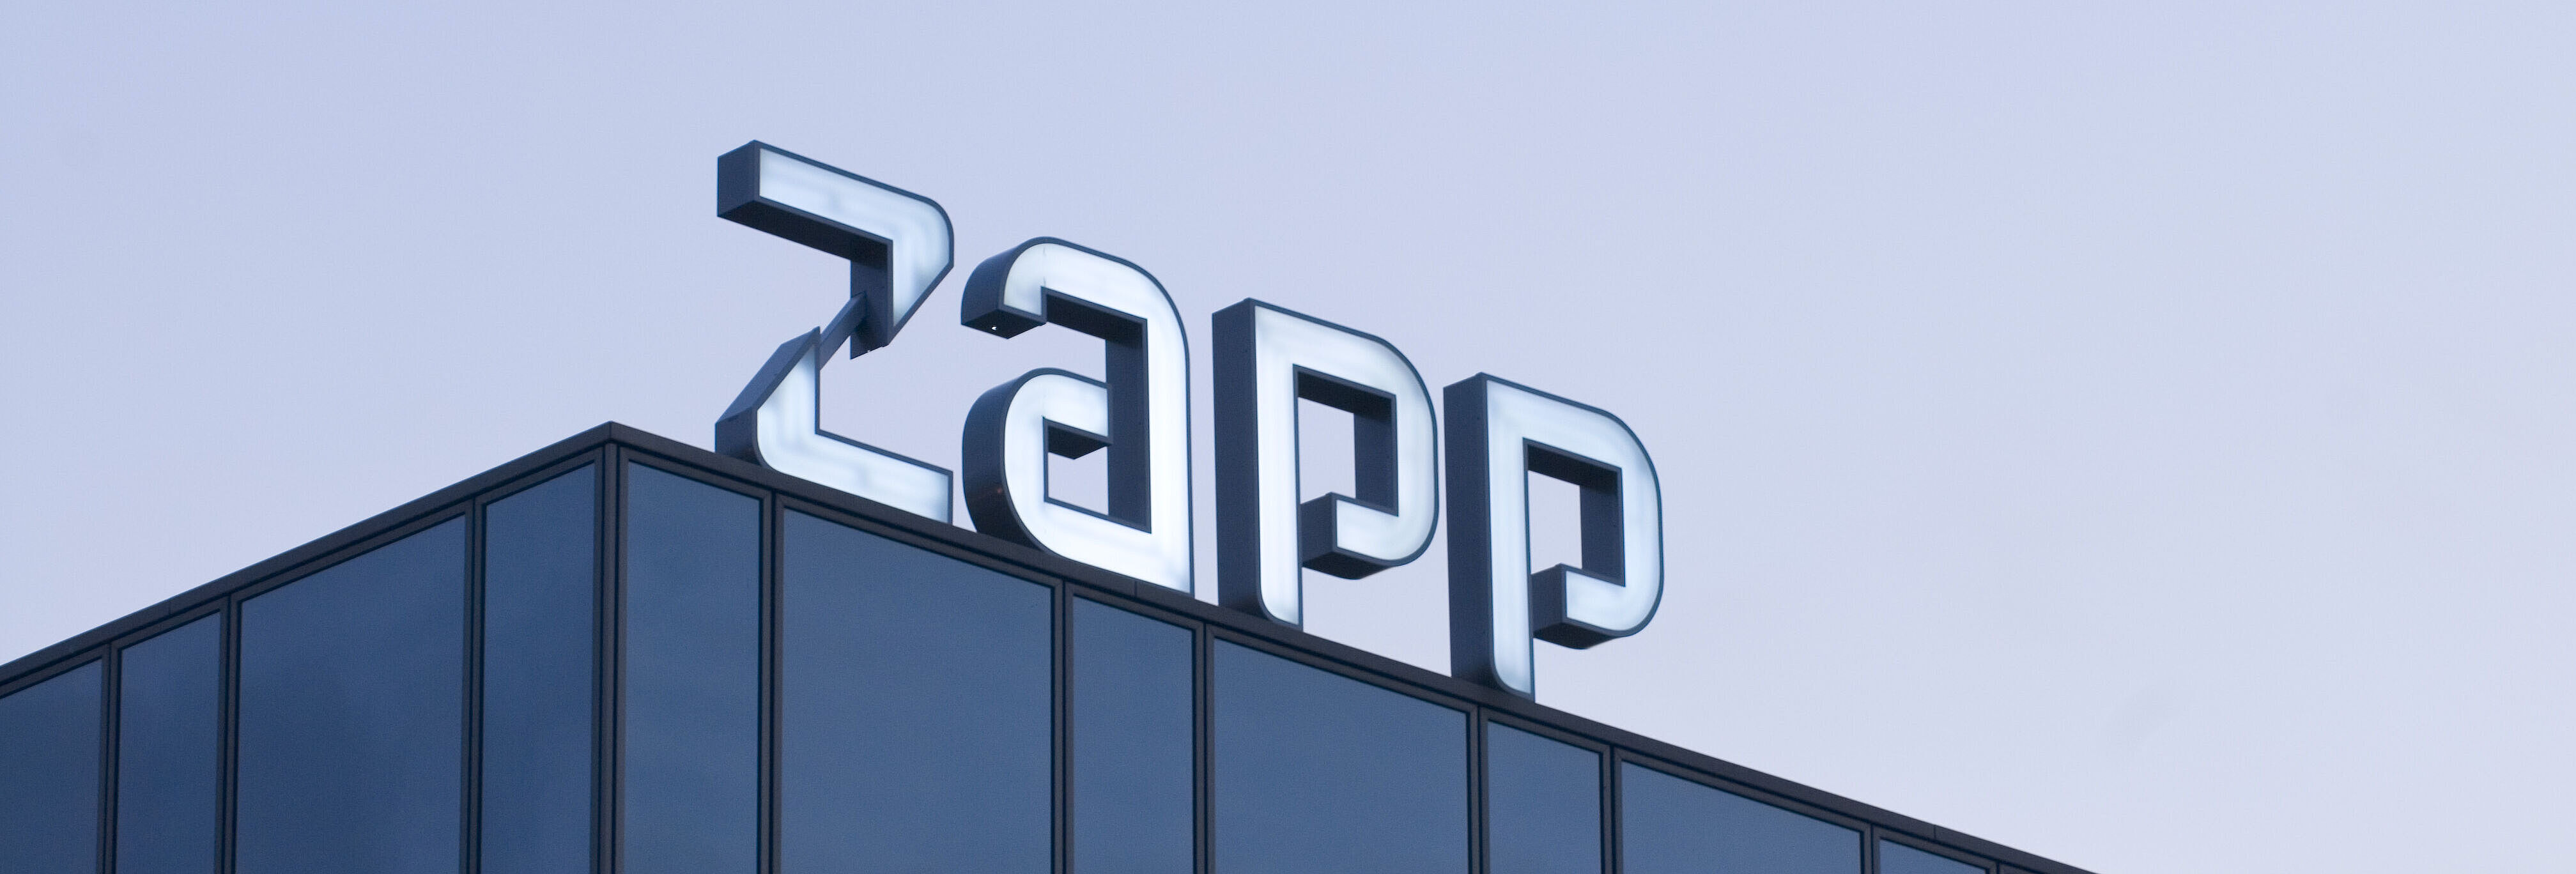 Zapp Logo auf der Fassade